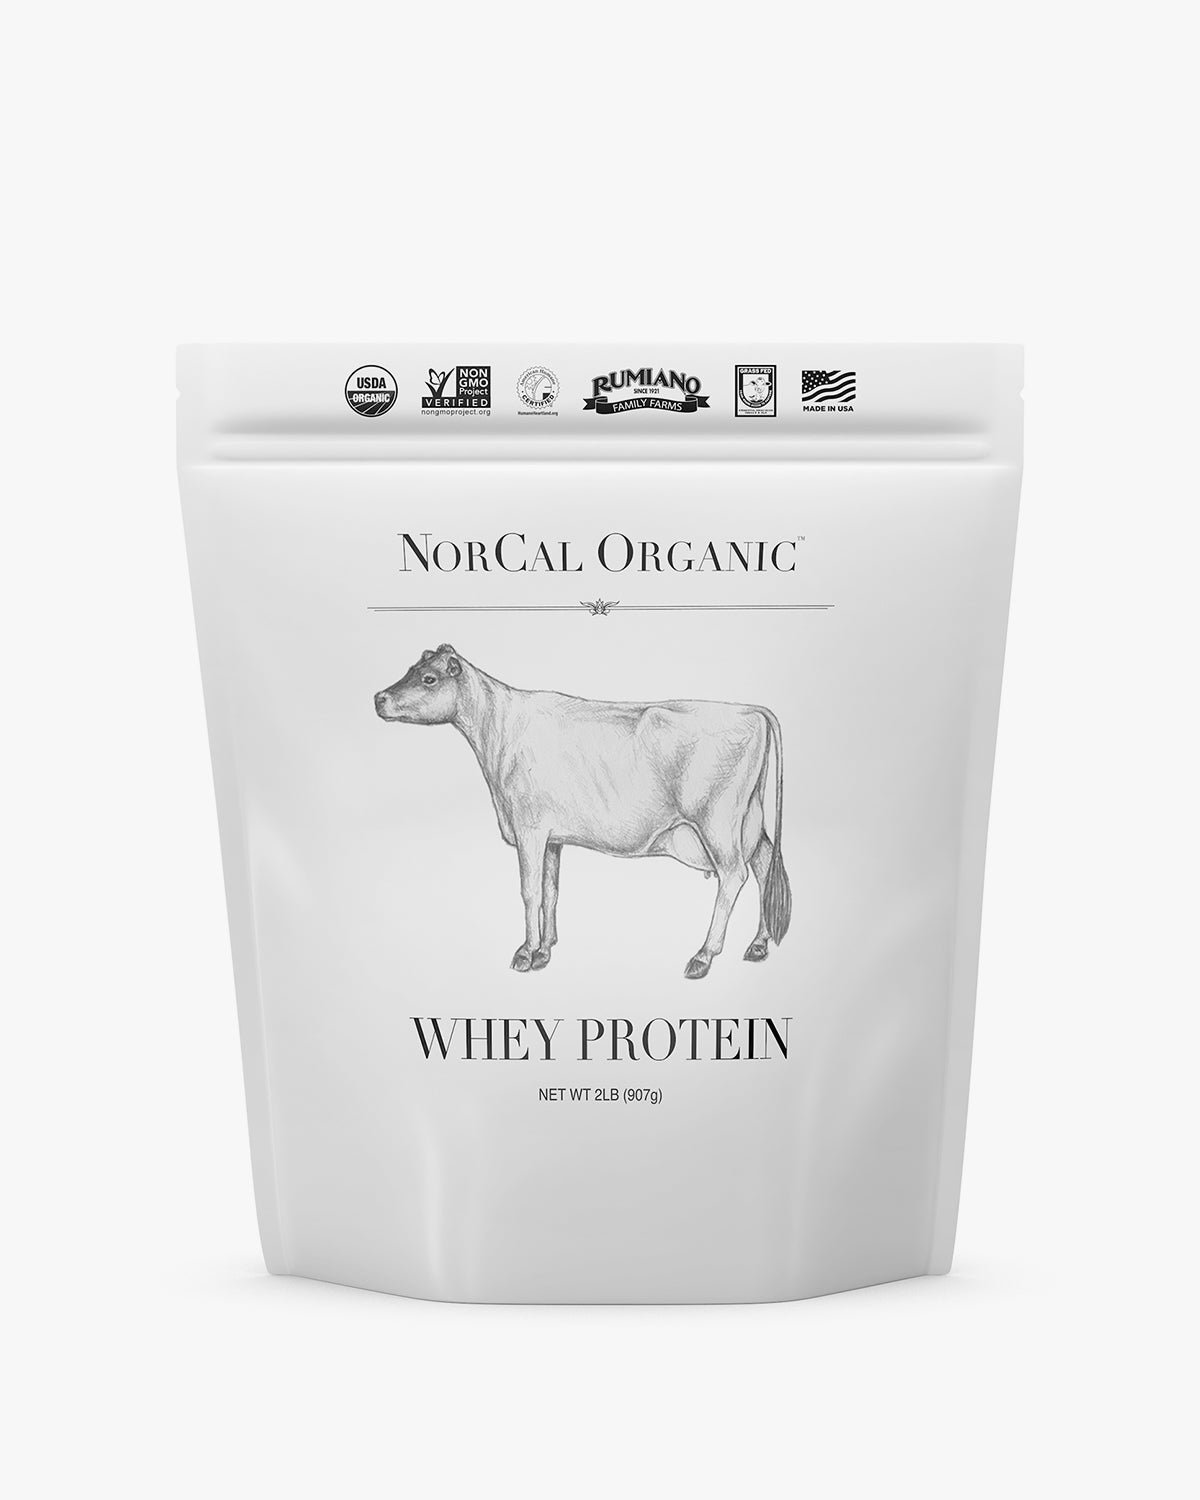 100% Whey Protein Isolate Non-GMO